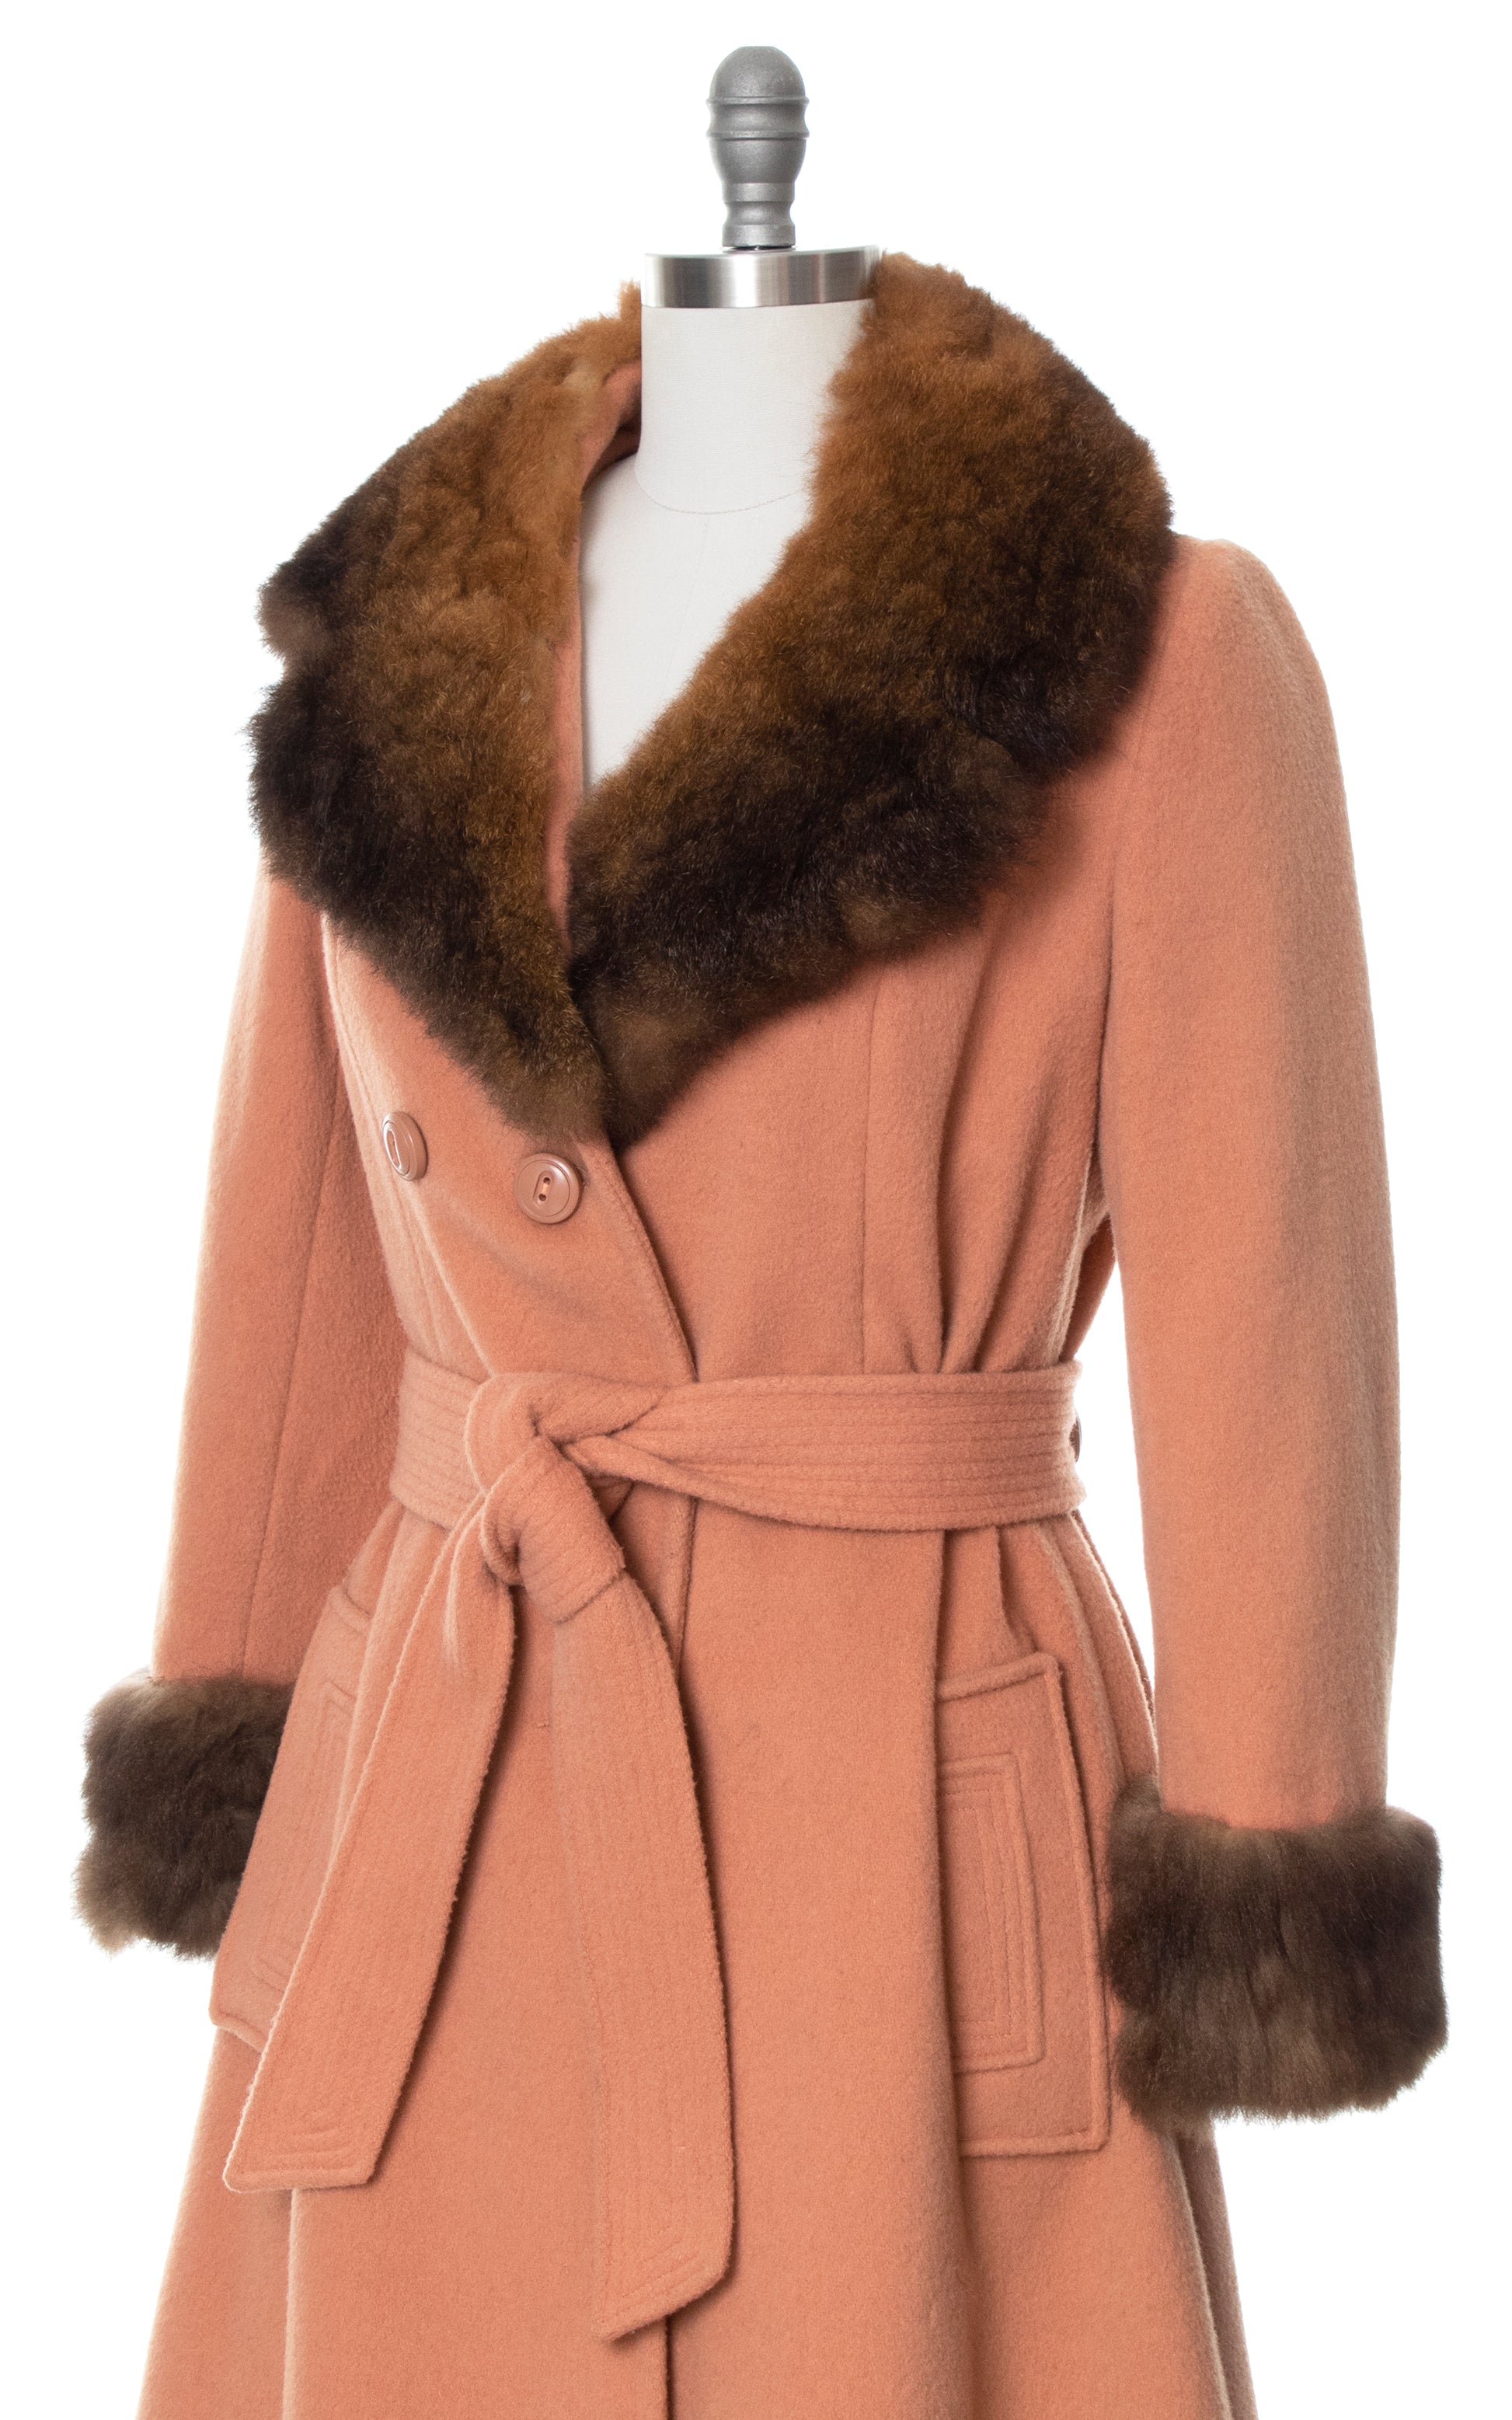 Vintage 70s 1970s Fur Trim & Dusty Rose Pink Wool Princess Coat Birthday Life Vintage